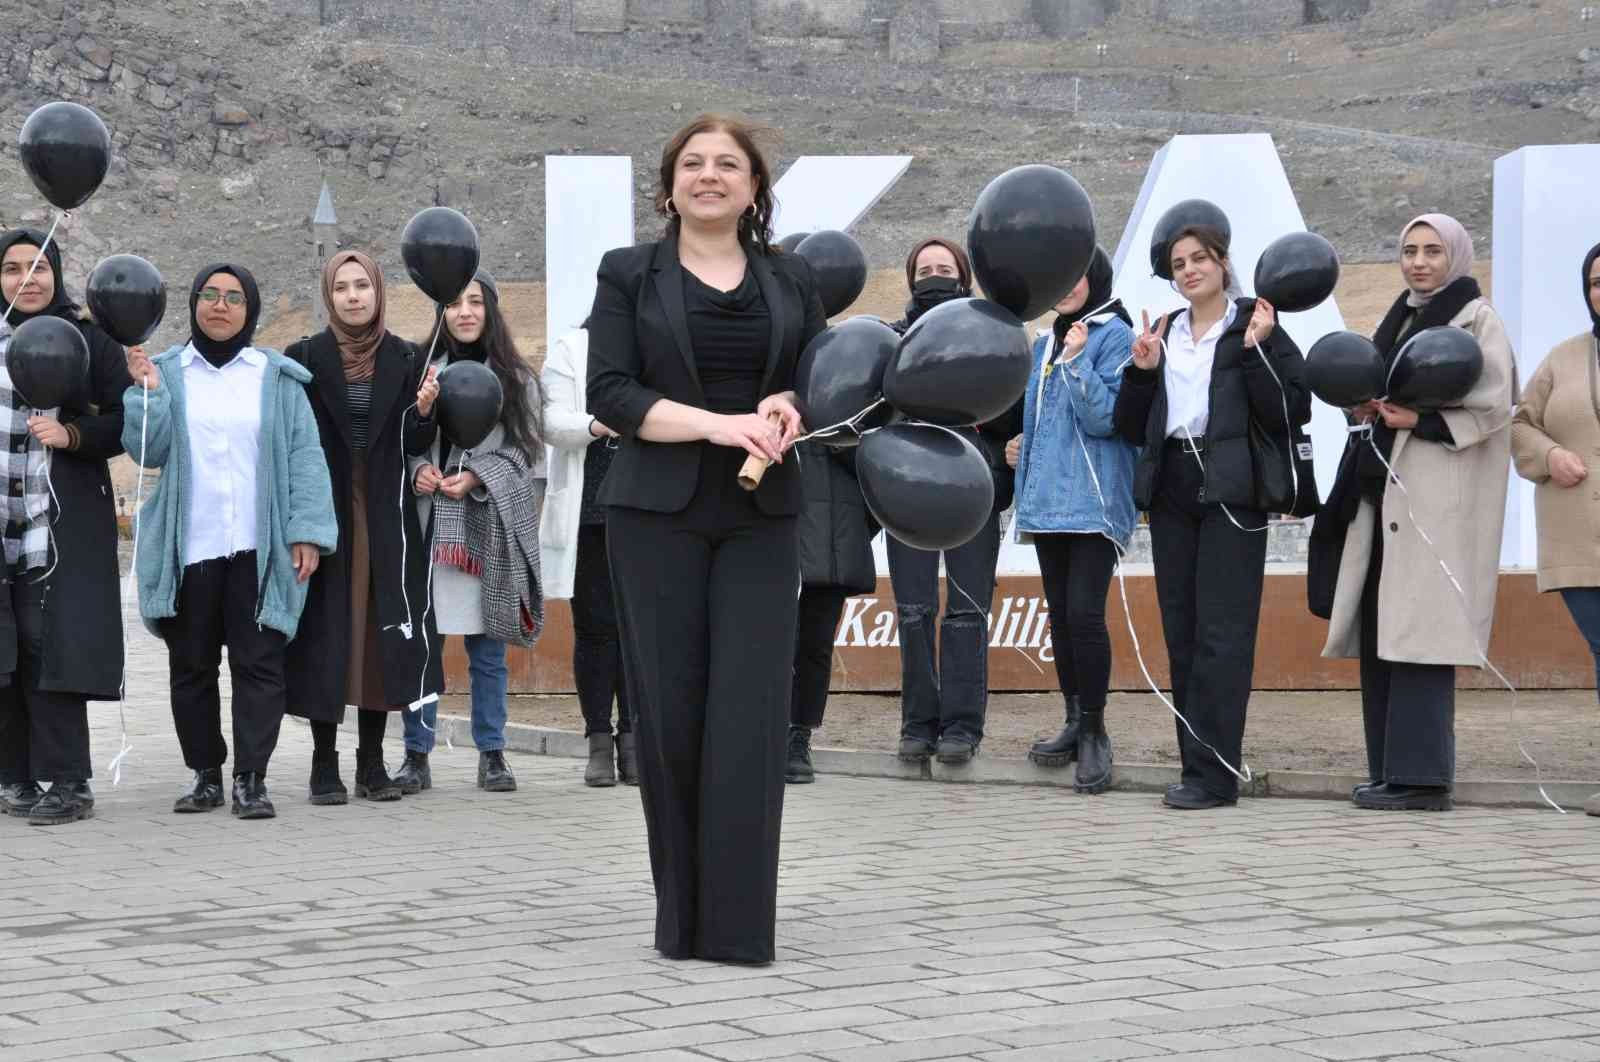 Kars’ta siyah balonlarla kadına şiddete dikkat çektiler #kars